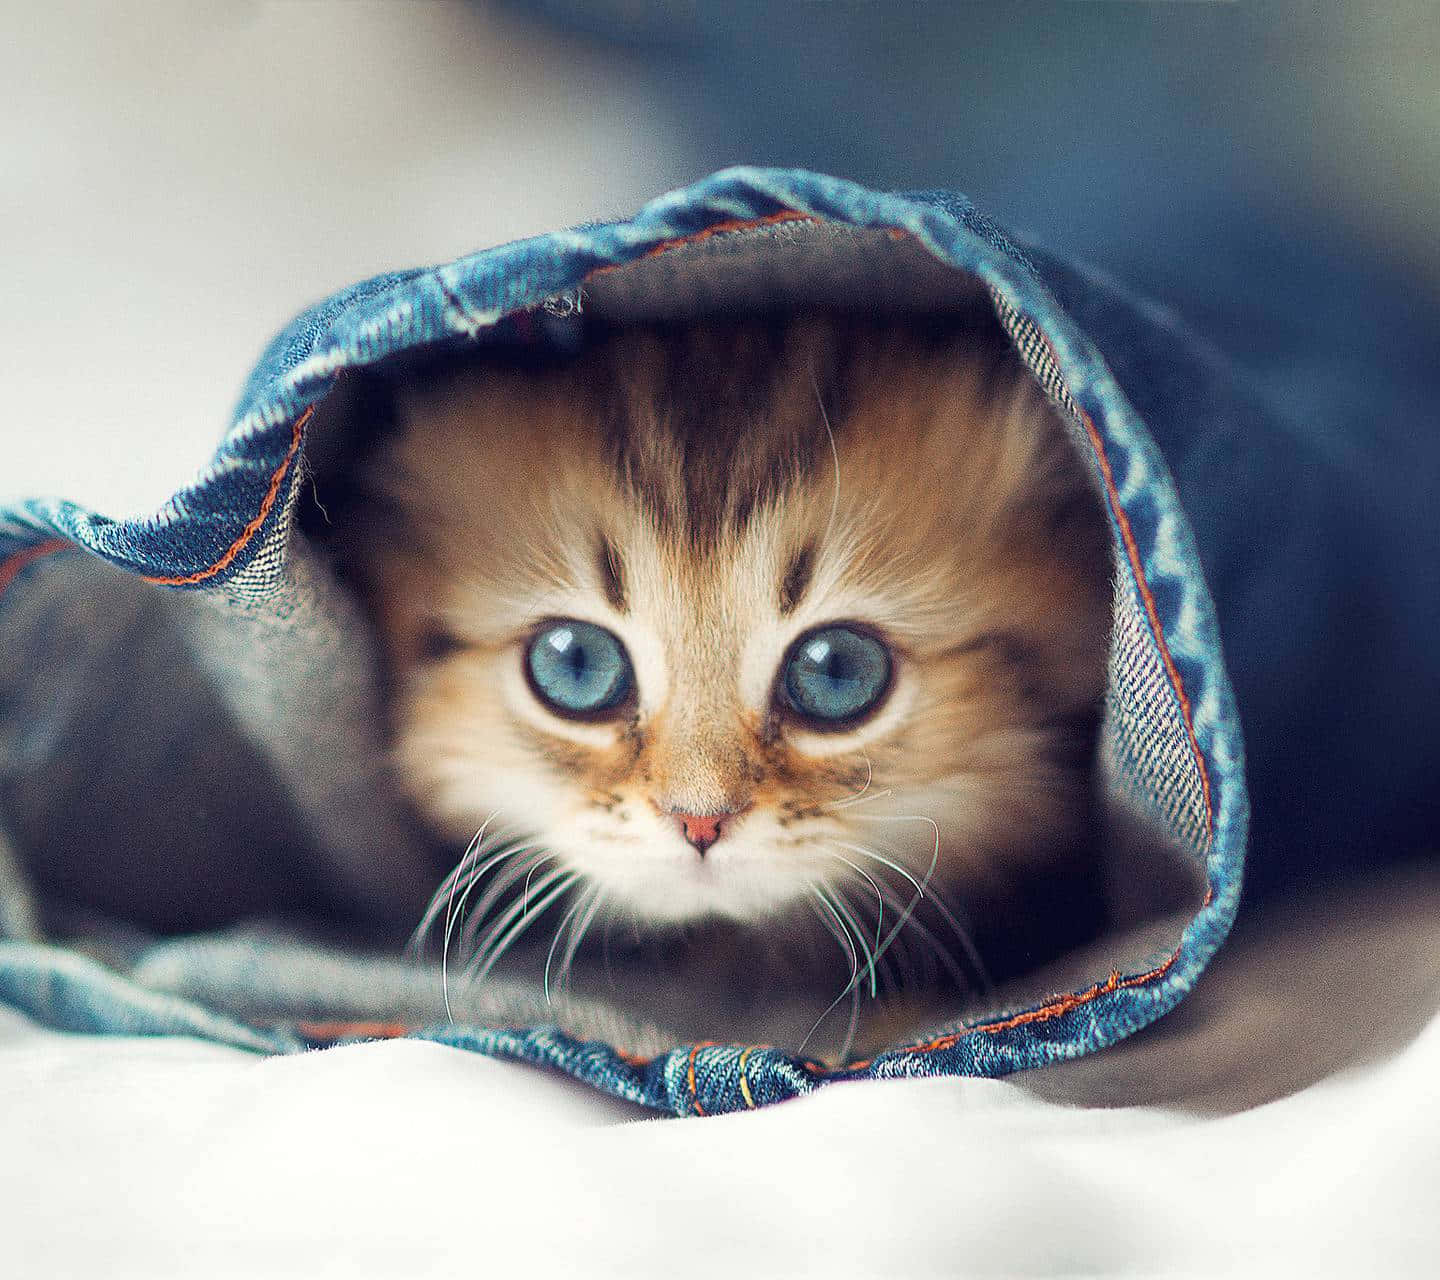 Imagende Un Gato Adorable De Ojos Azules